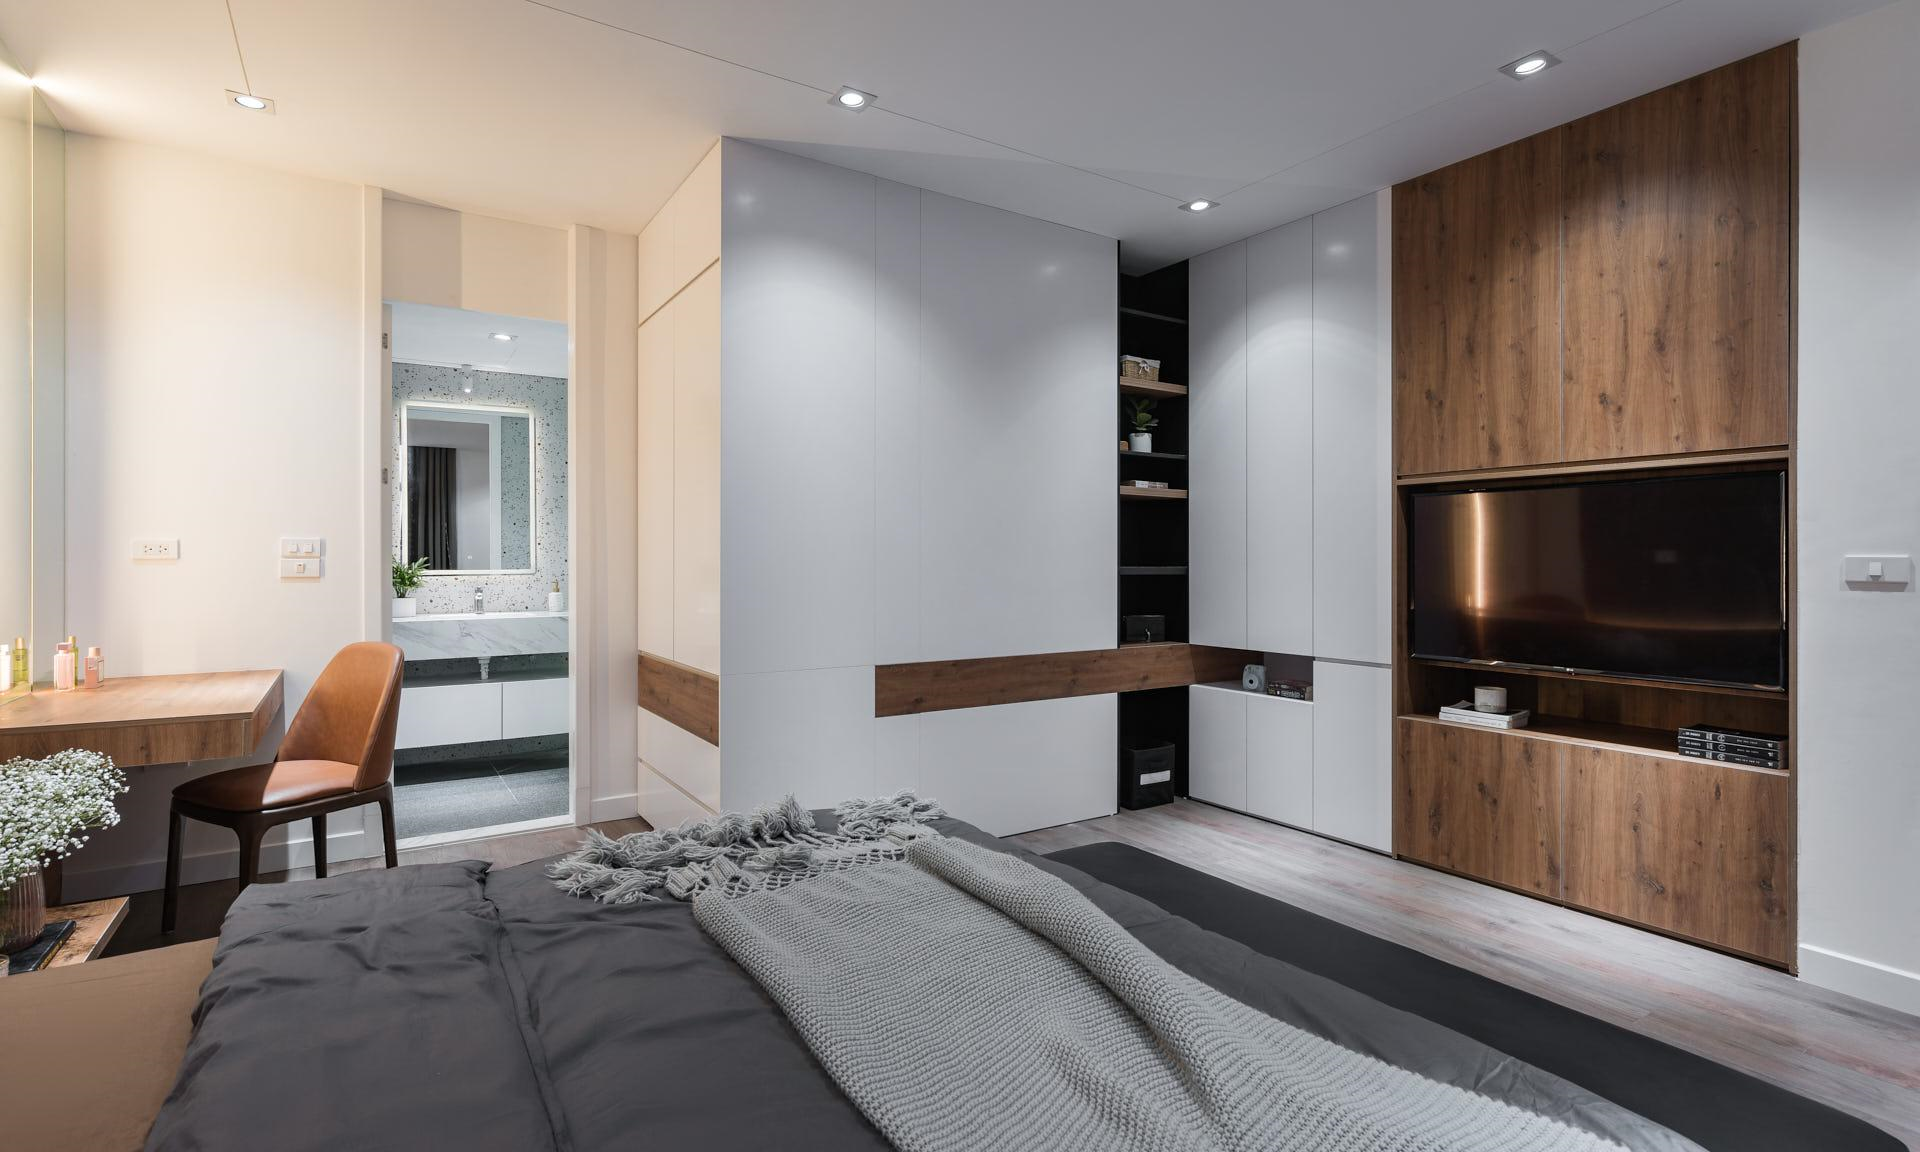 Phòng ngủ thiết kế thông minh nhằm tận dụng tối đa diện tích sử dụng